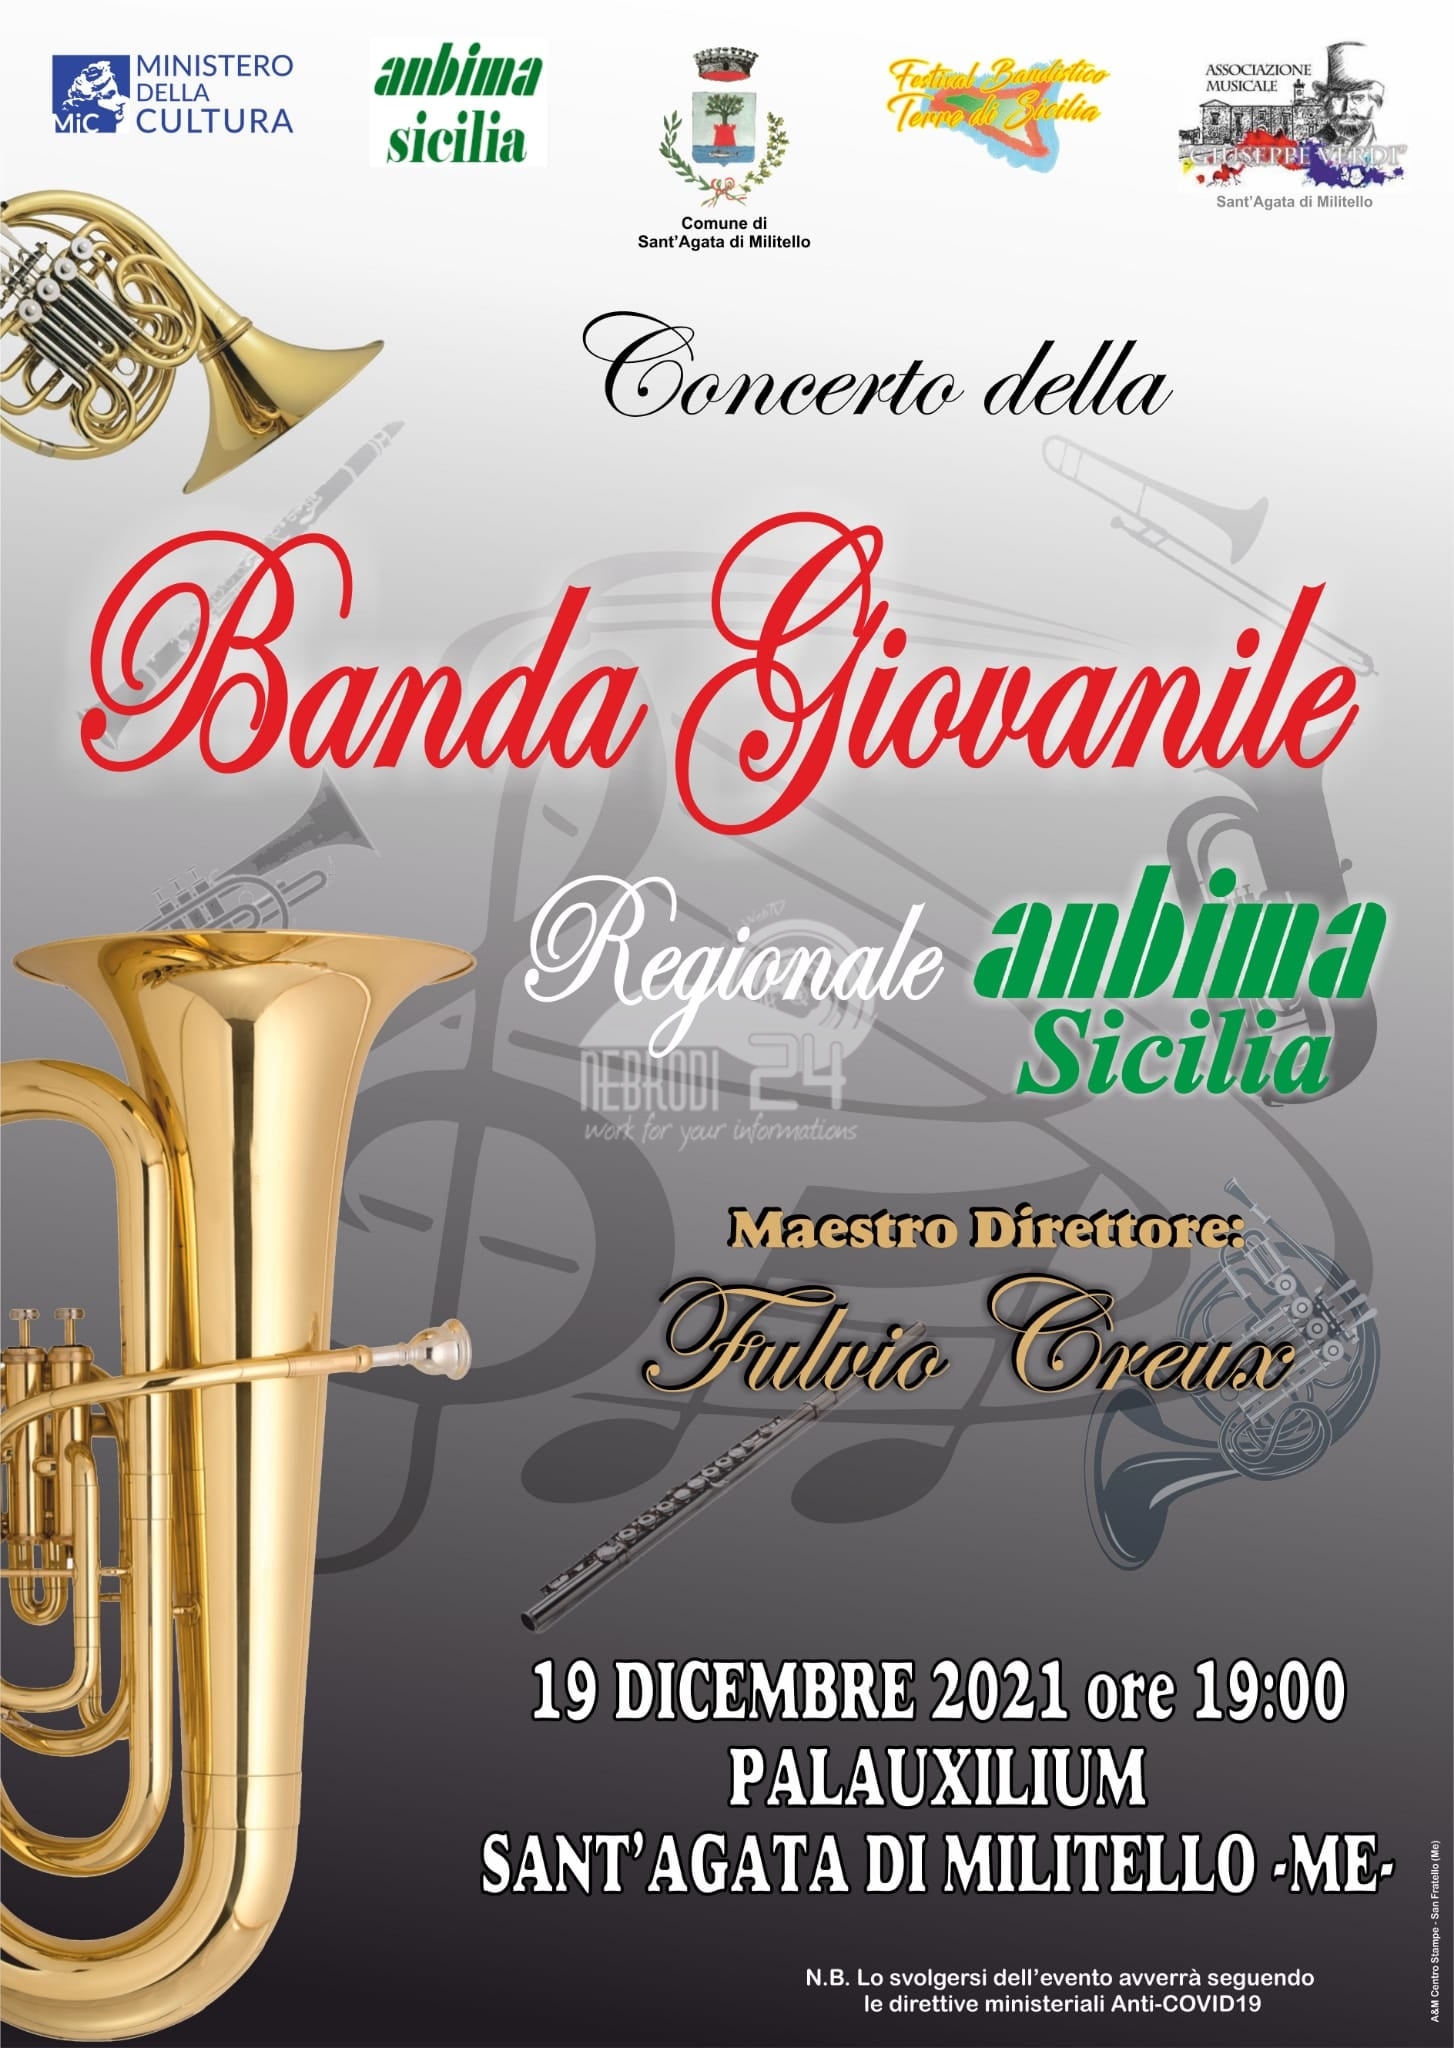 Sant’Agata Militello – Oggi il Concerto della Banda Giovanile Regionale ANBIMA Sicilia